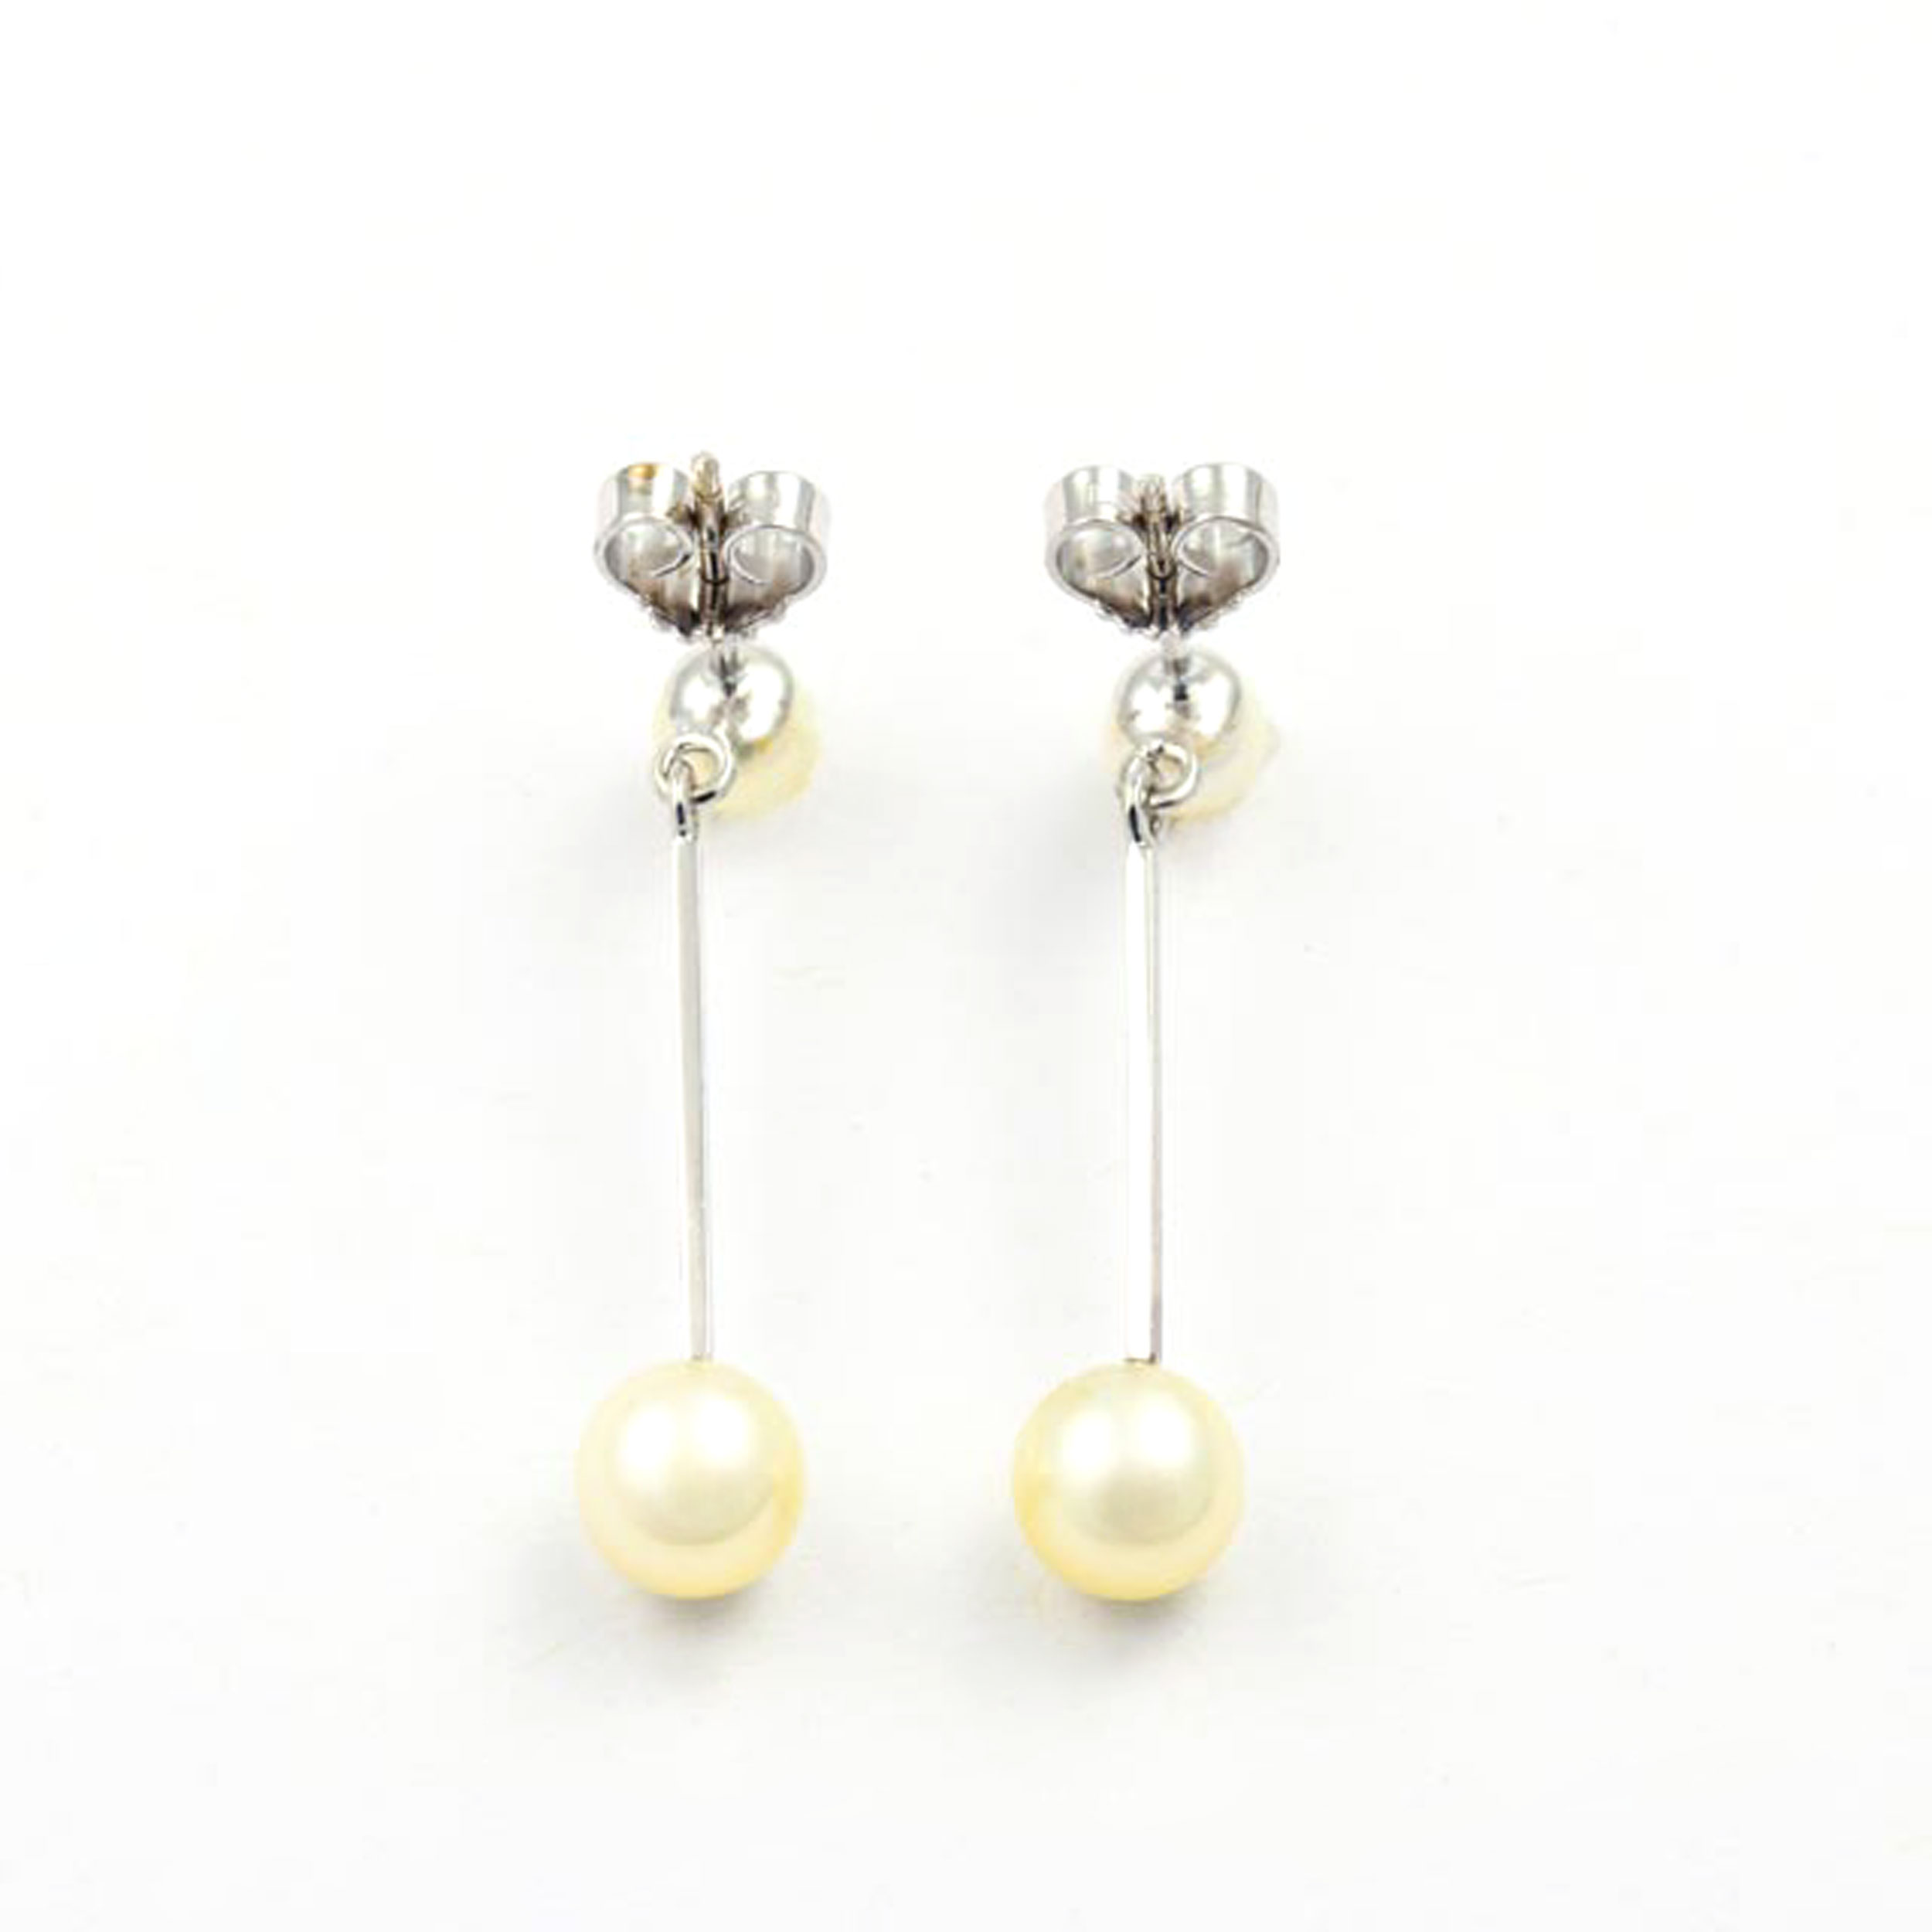 Perlenohrhänger aus 585 Weißgold, nachhaltiger second hand Schmuck perfekt aufgearbeitet